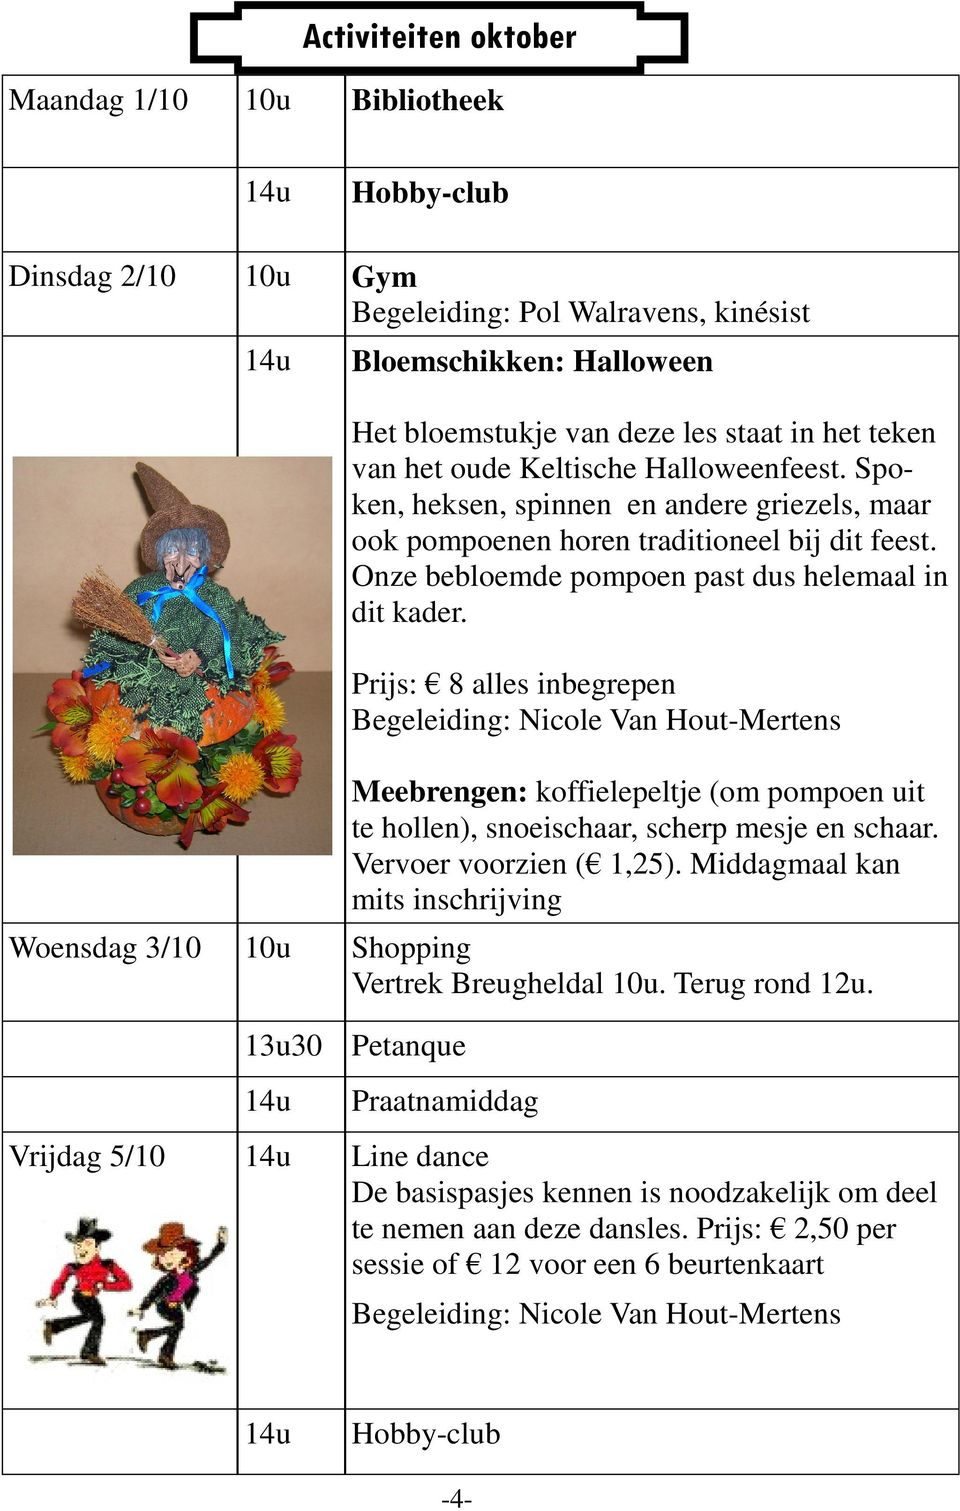 Prijs: 8 alles inbegrepen Begeleiding: Nicole Van Hout-Mertens Meebrengen: koffielepeltje (om pompoen uit te hollen), snoeischaar, scherp mesje en schaar. Vervoer voorzien ( 1,25).